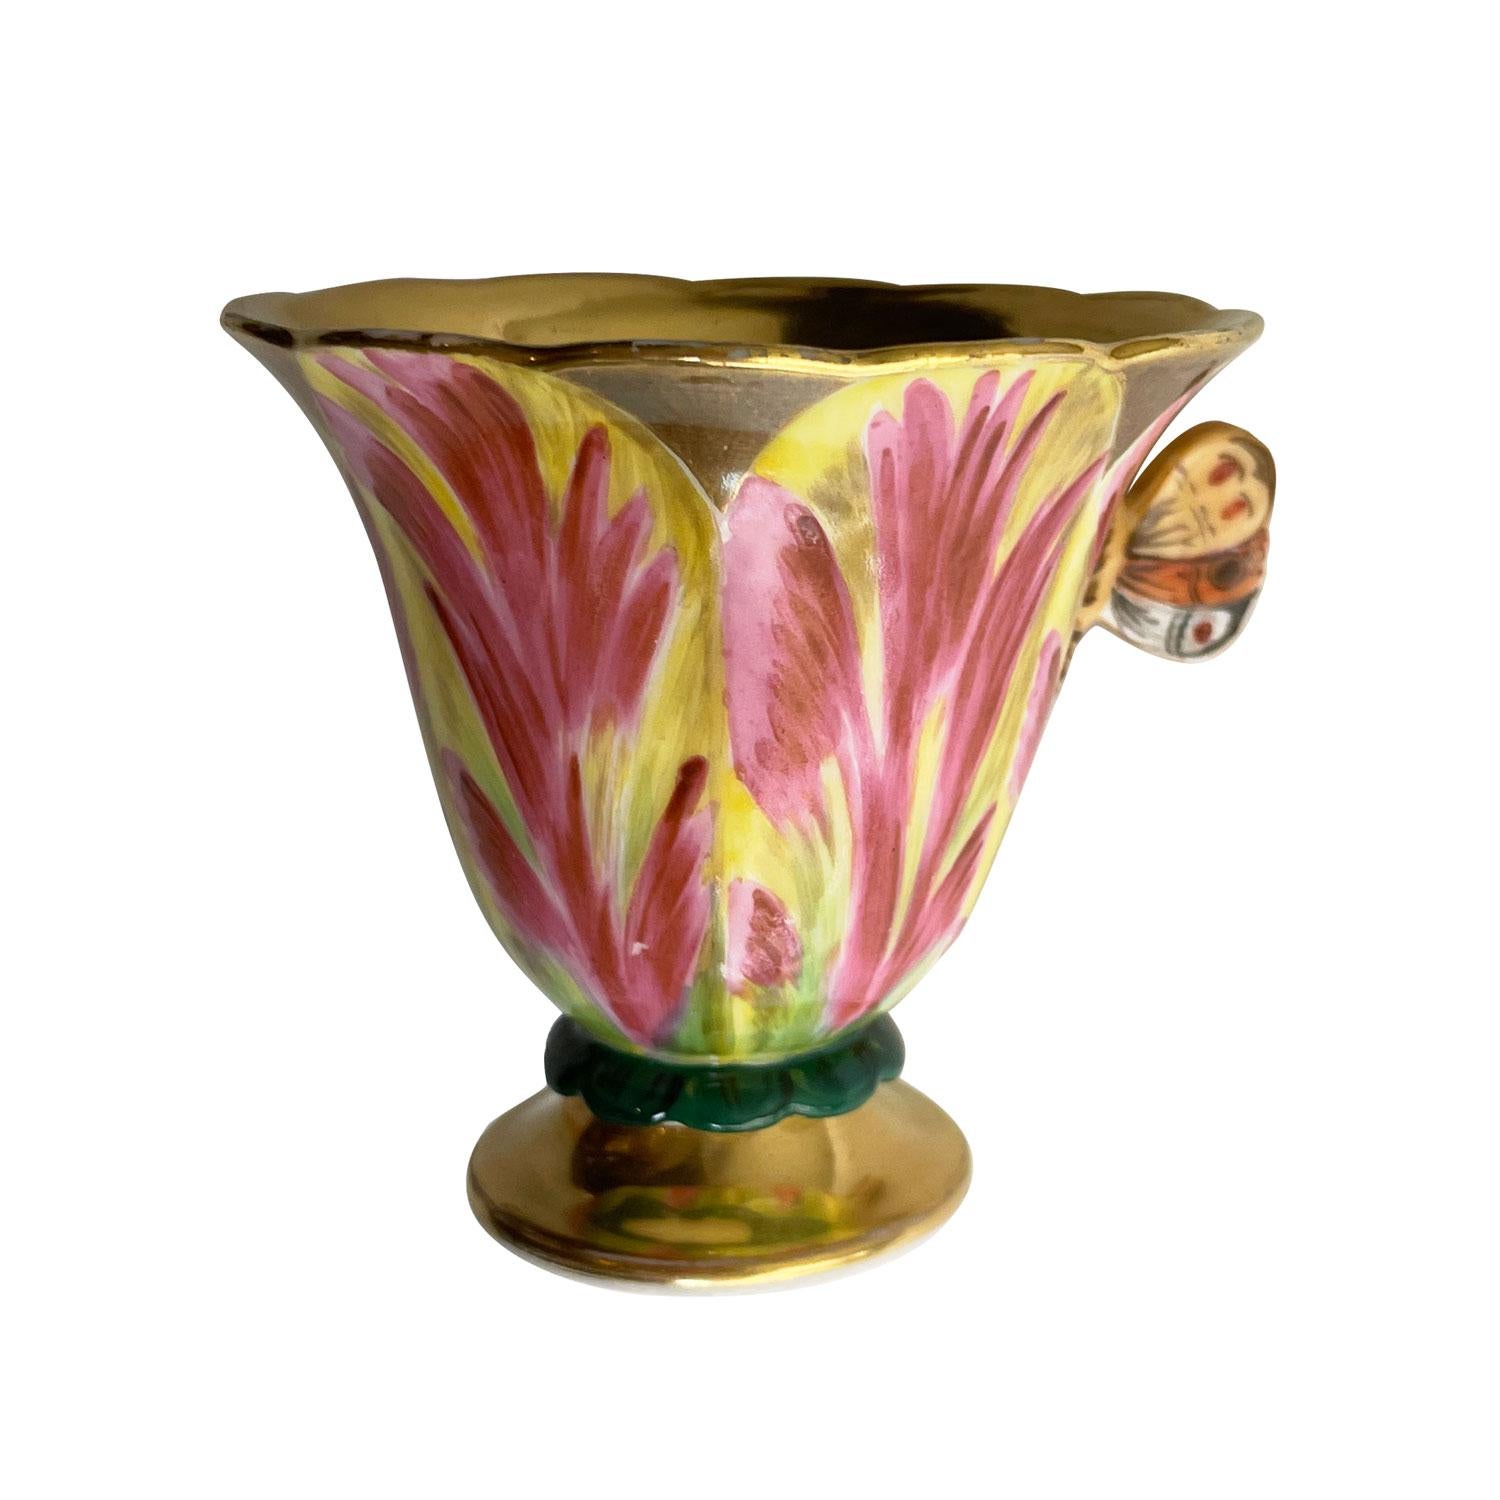 Tasse en forme de tulipe et sa soucoupe en porcelaine de Paris. Pièces peintes à la main avec de jolies nuances de violet et de blanc, en forme de fleur de tulipe. Pièce très délicate avec une anse en forme de papillon, aux bords légèrement